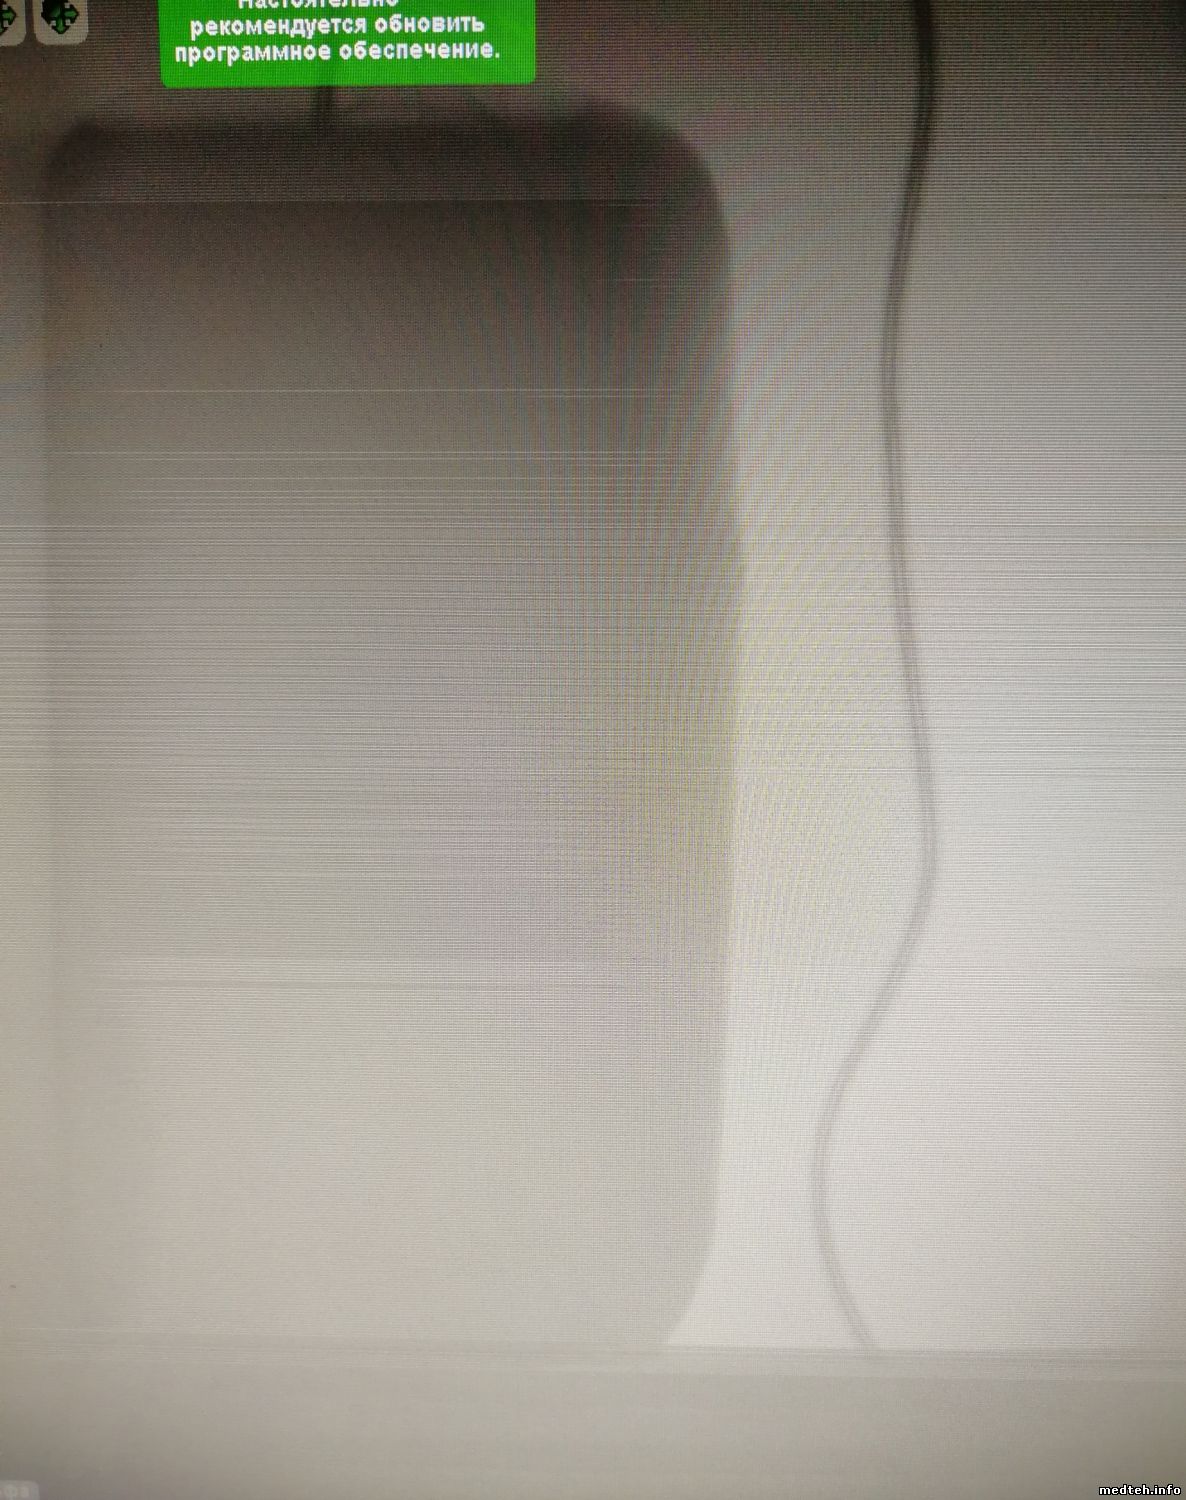 Плохое качество экрана. Мутное изображение монитора видеодомофона.